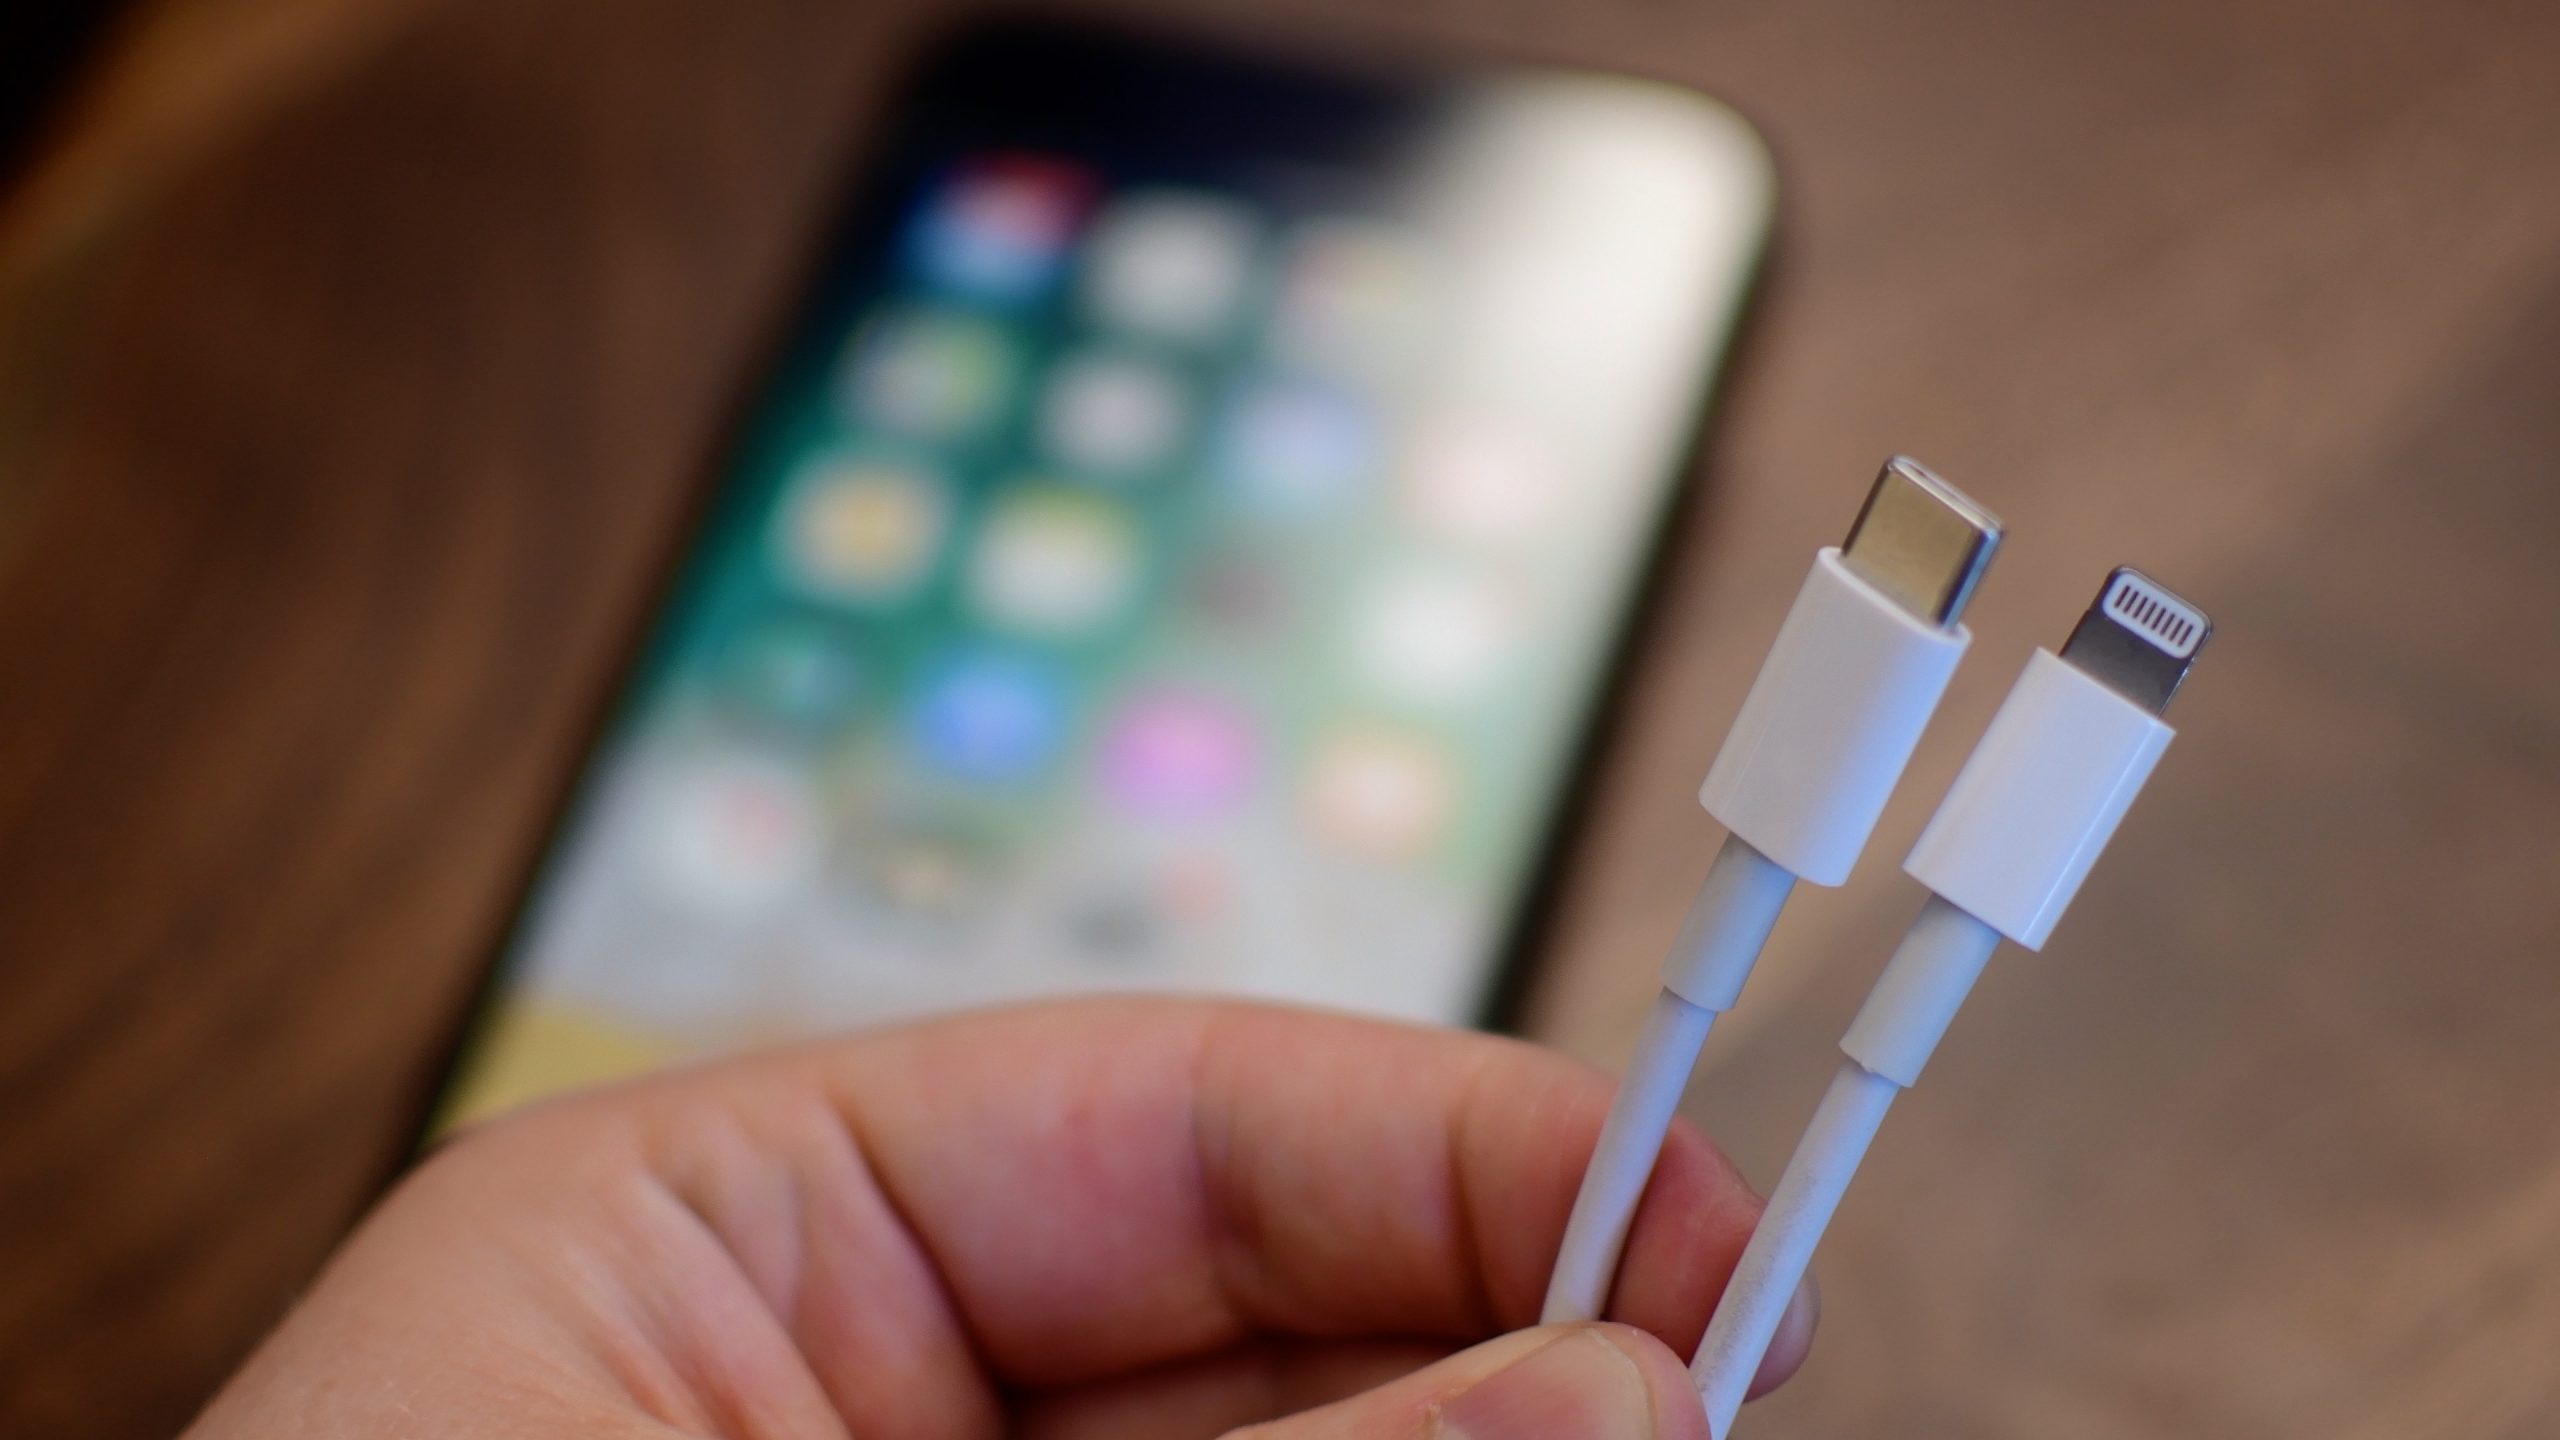 Apple sẽ sớm cho phép các nhà sản xuất làm dây USB-C sang Lightning theo chuẩn MFi